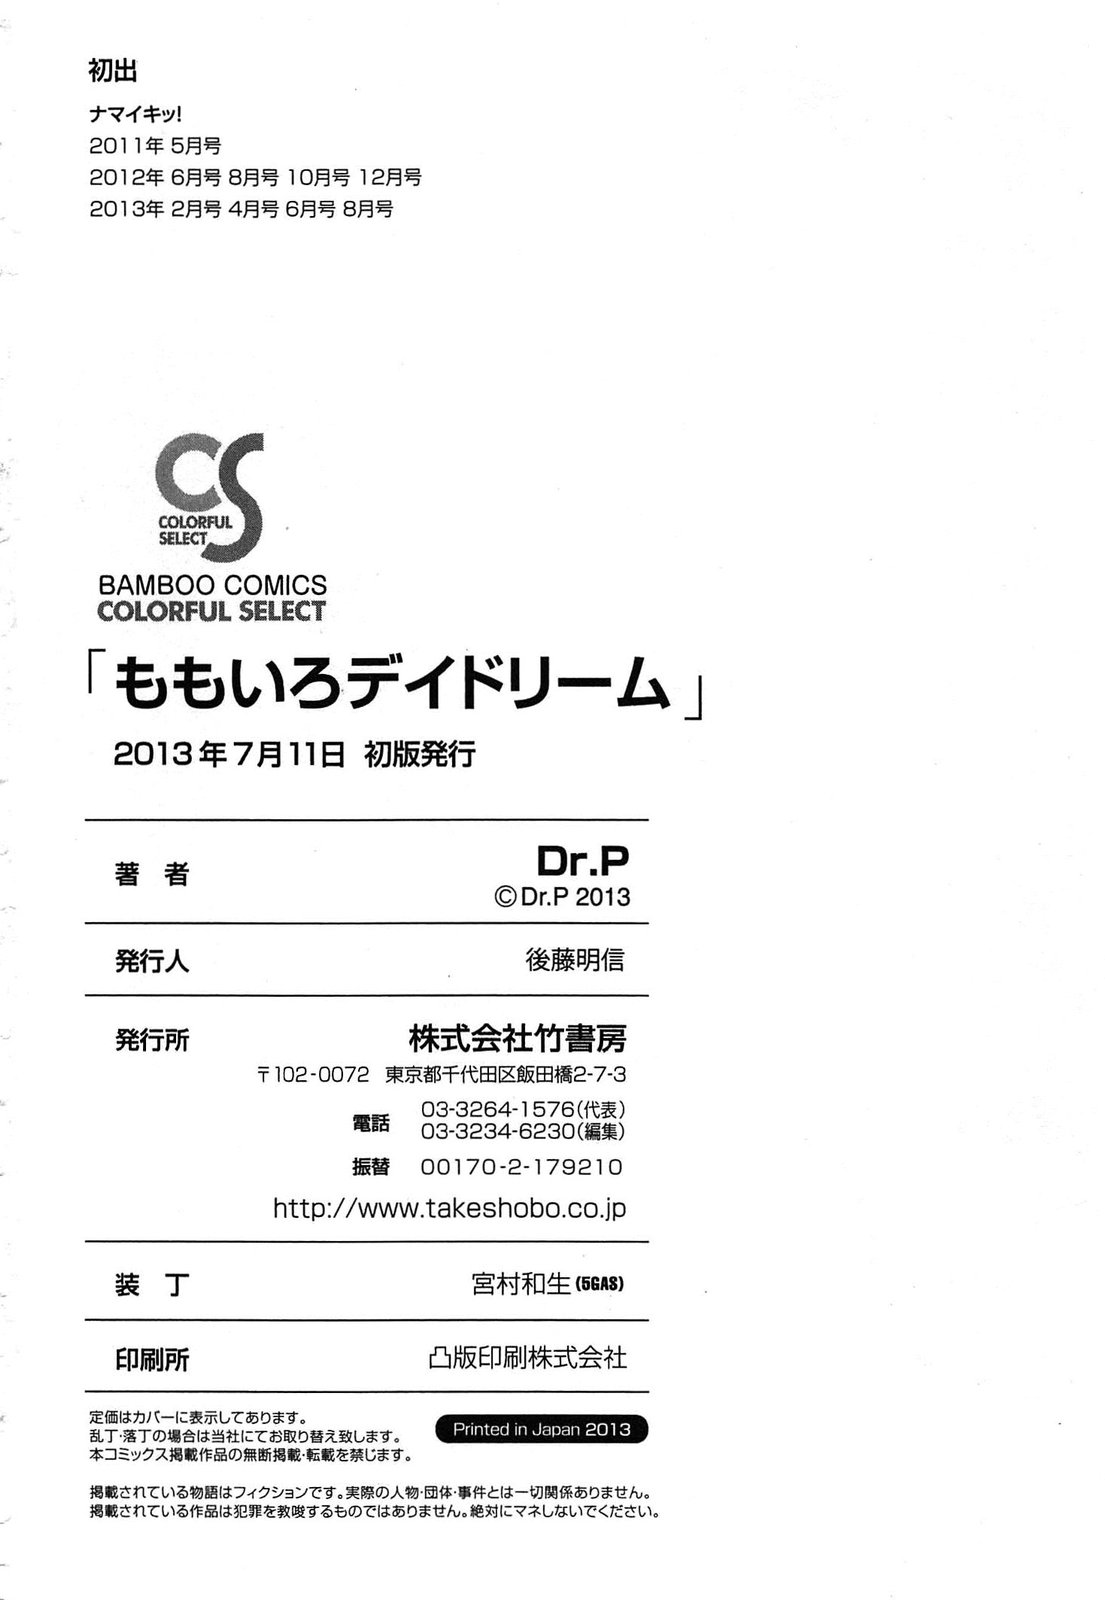 [Dr.P] Momoiro Daydream [Dr.P] ももいろデイドリーム